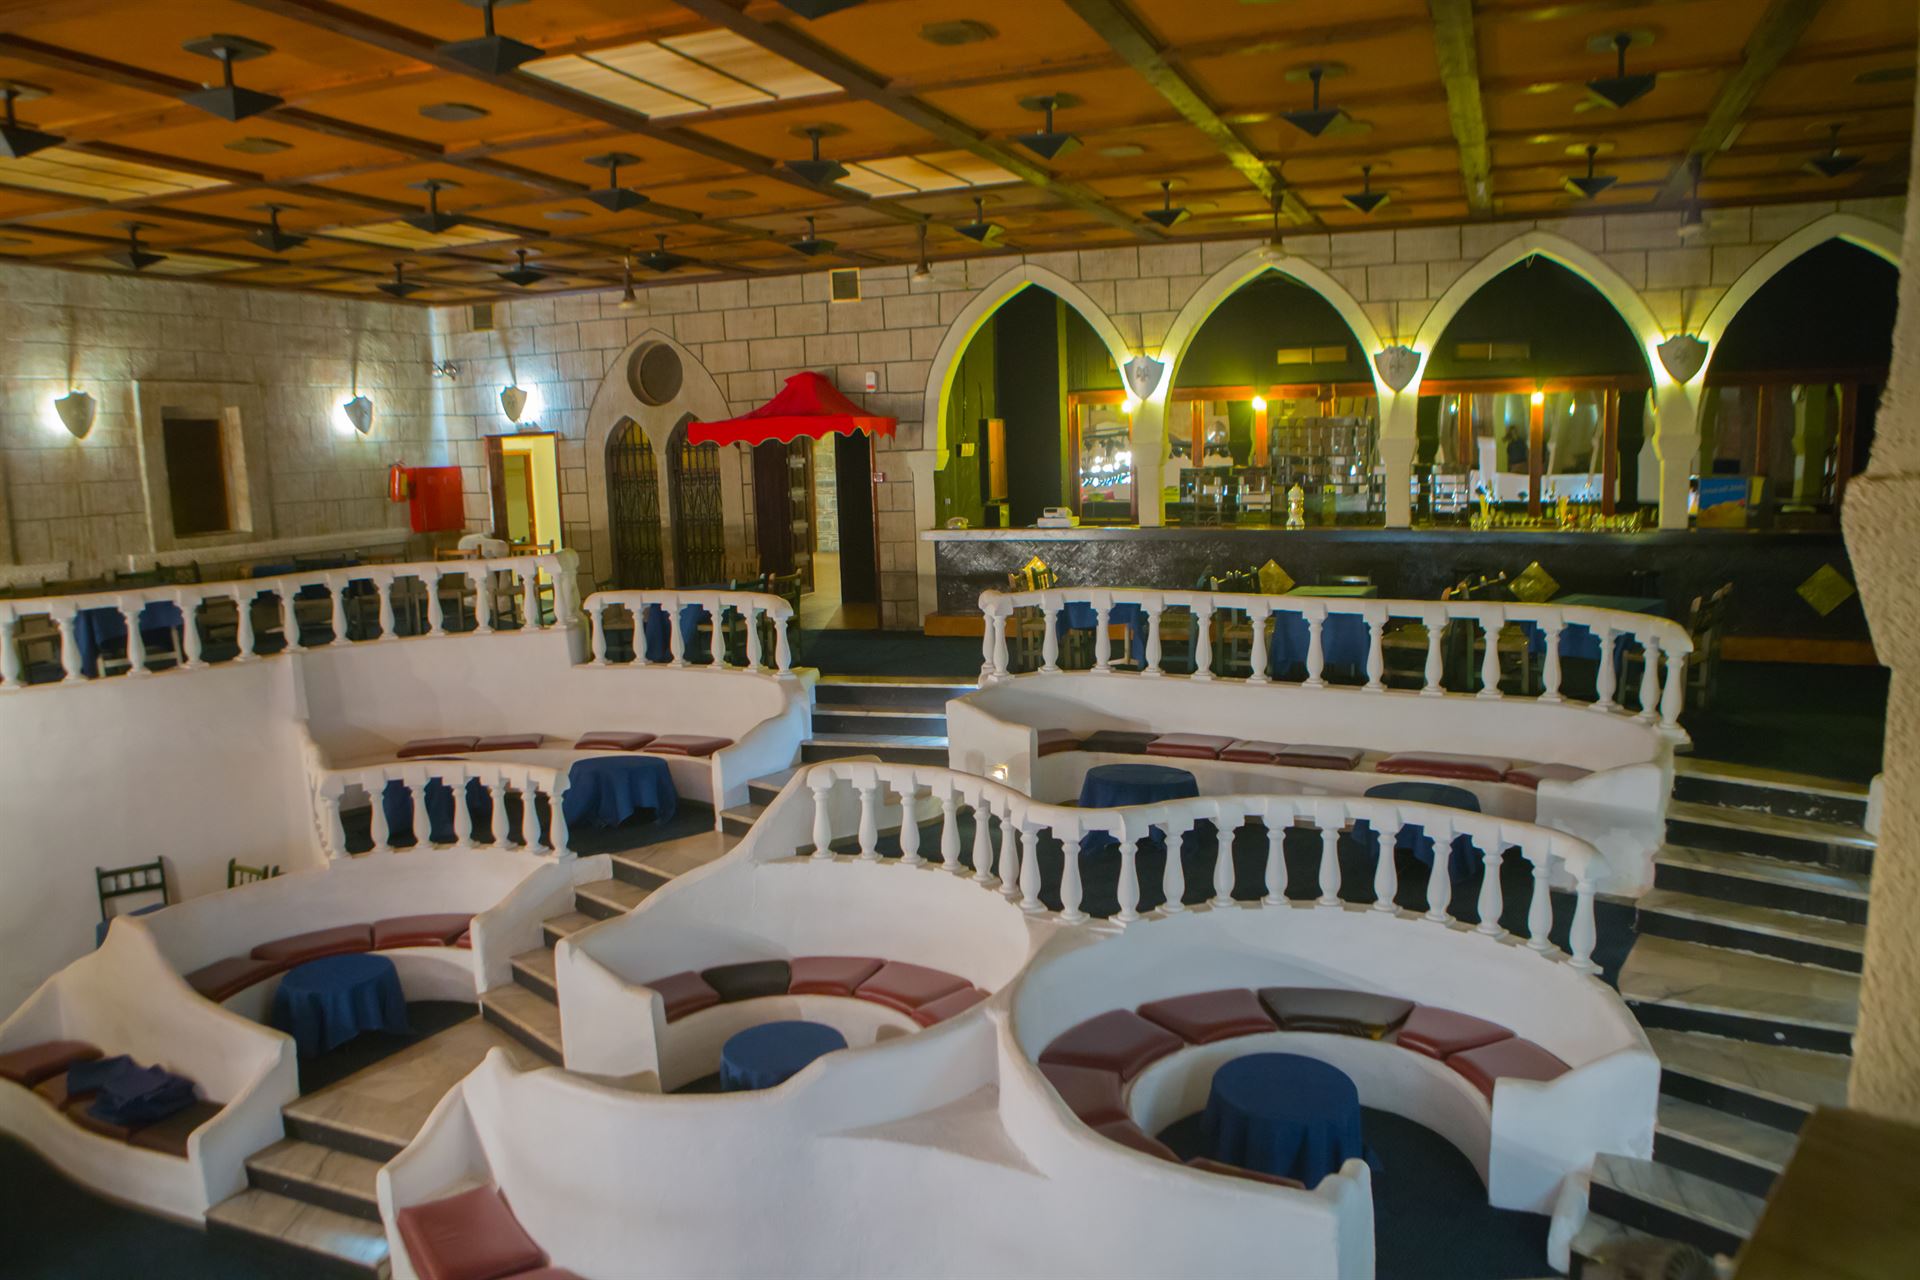 Athos Palace Hotel: night club